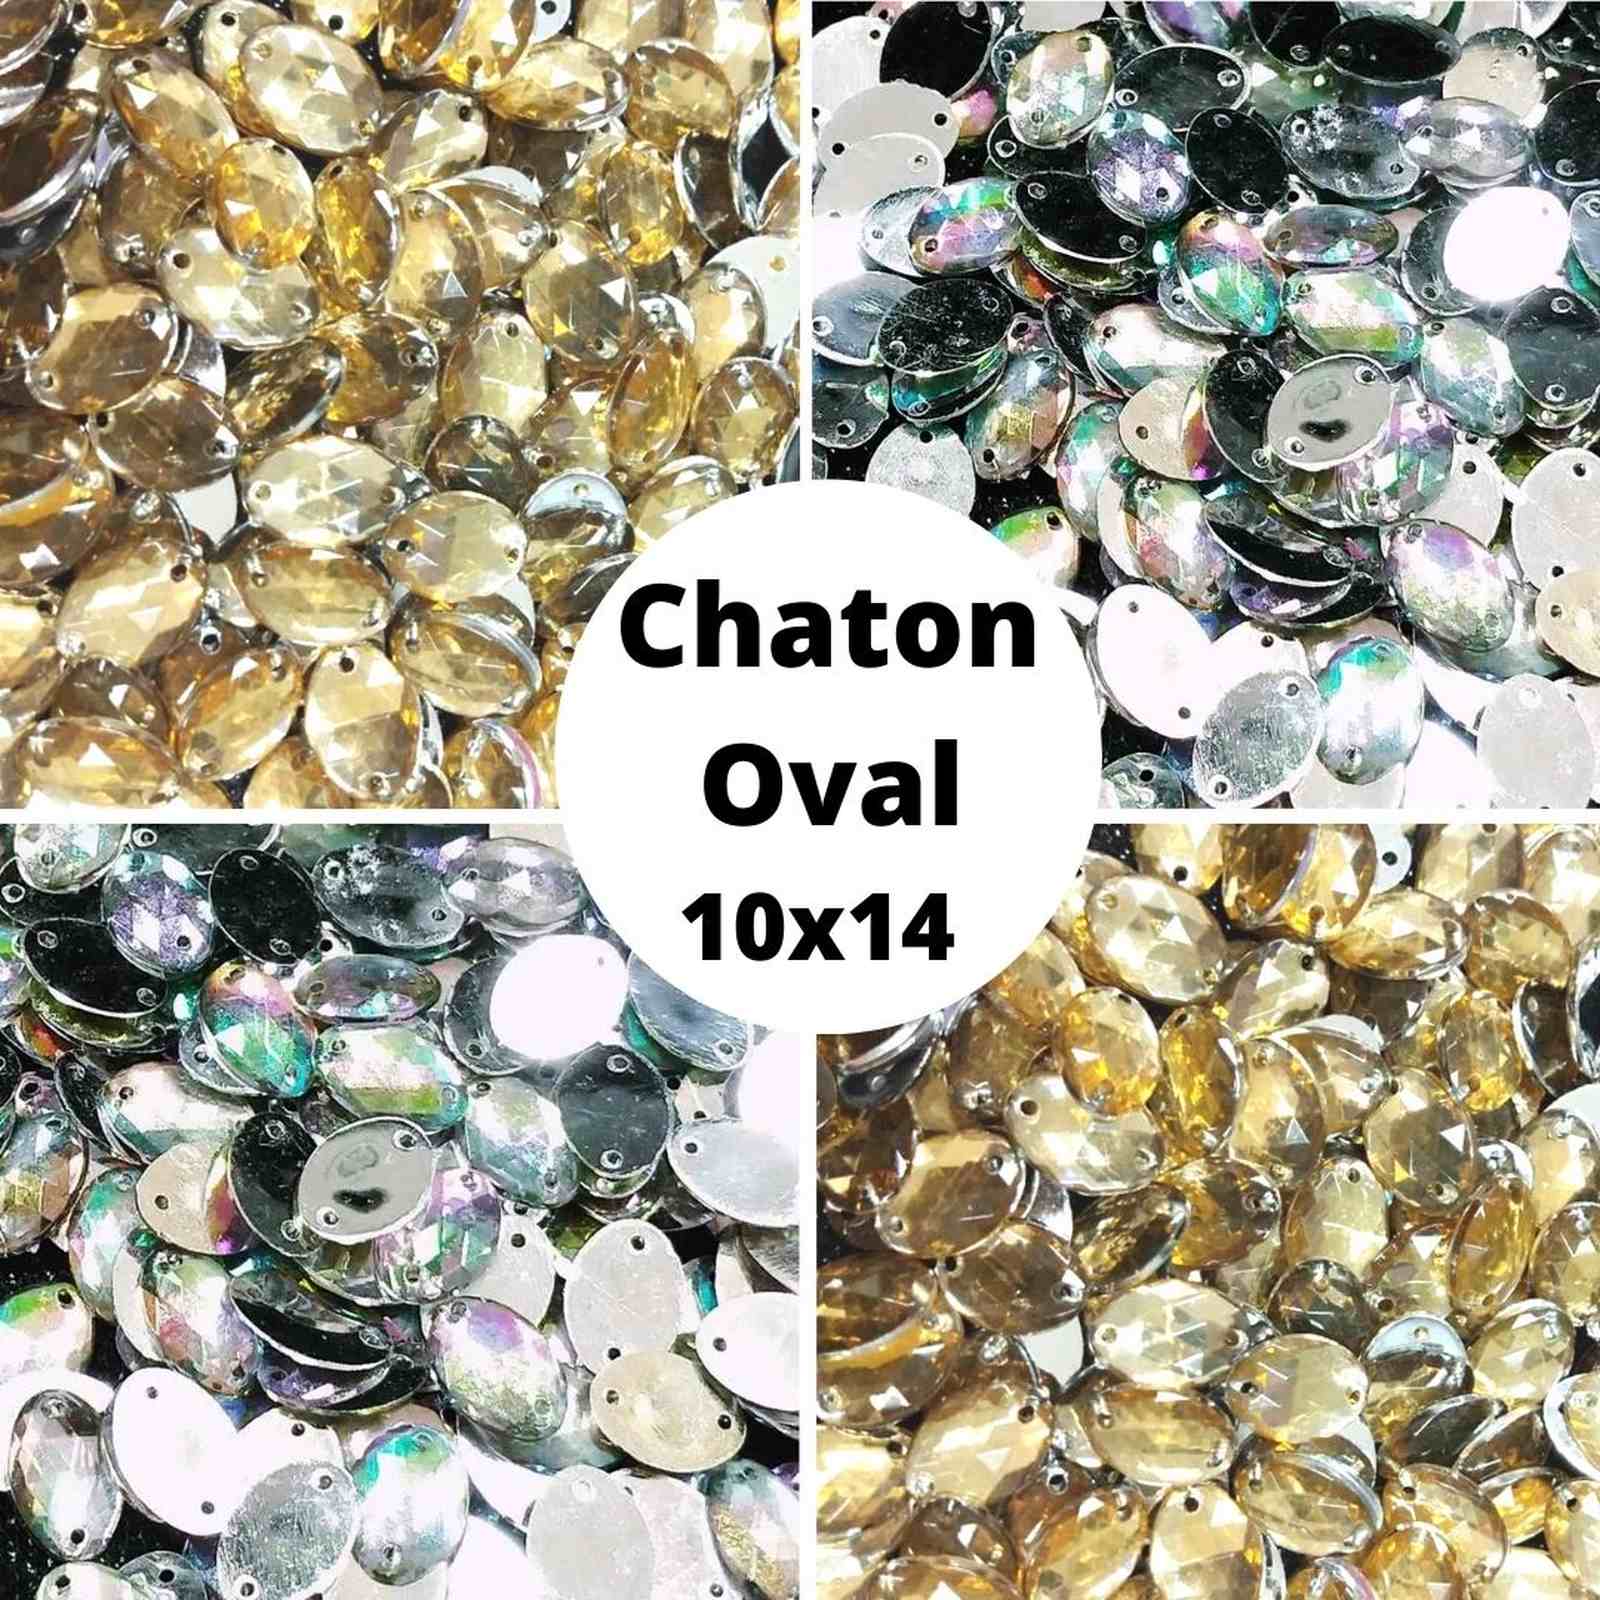 Chaton Oval  Acrilico - 10x14 - Pacote com 1.000 unidades